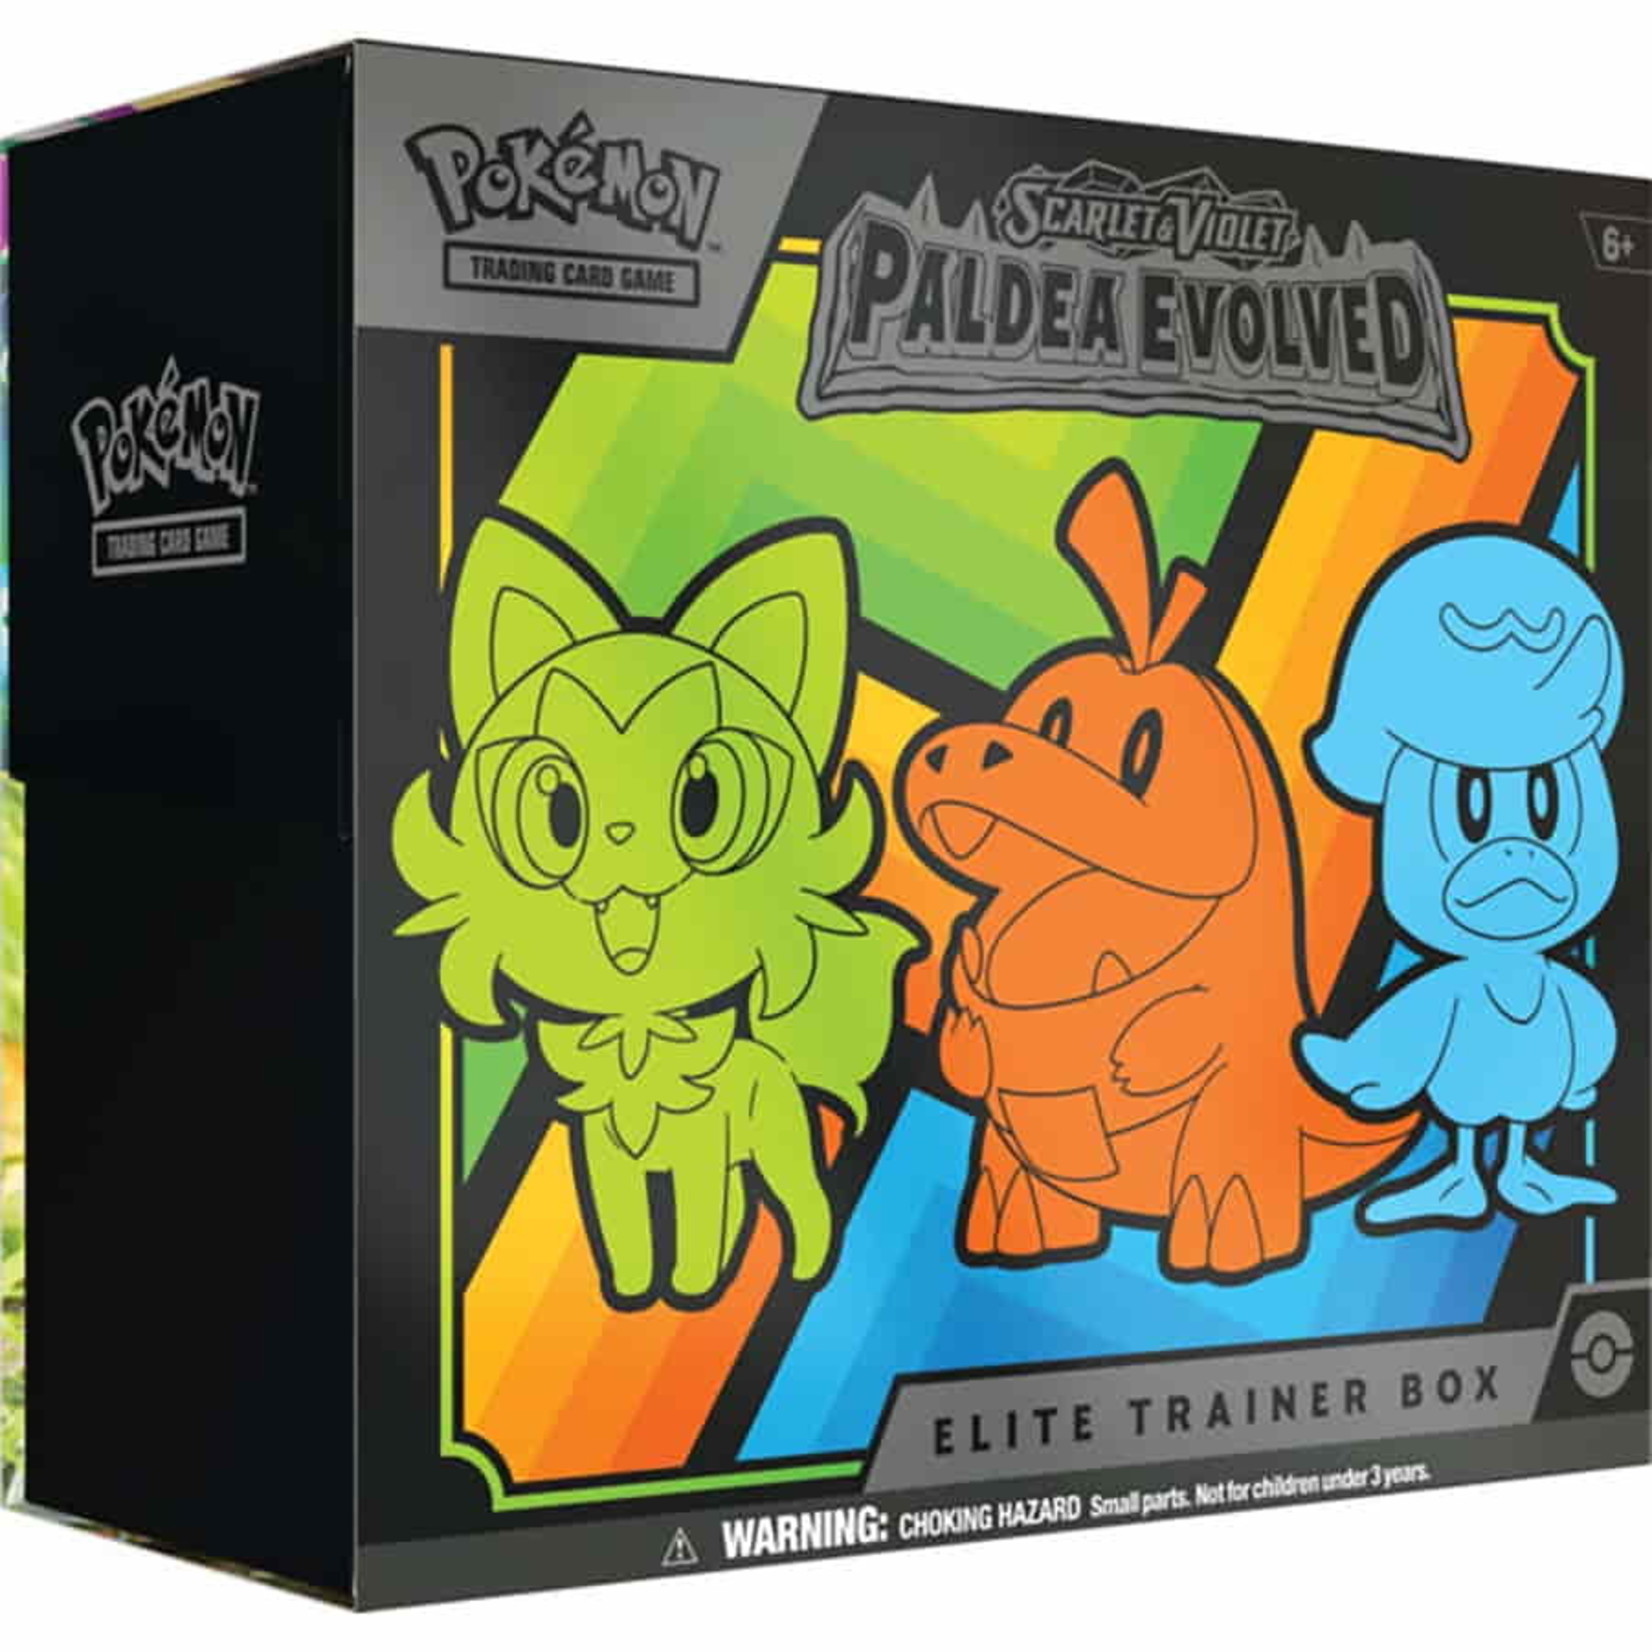 Pokemon POKEMON PALDEA EVOLVED ELITE TRAINER BOX